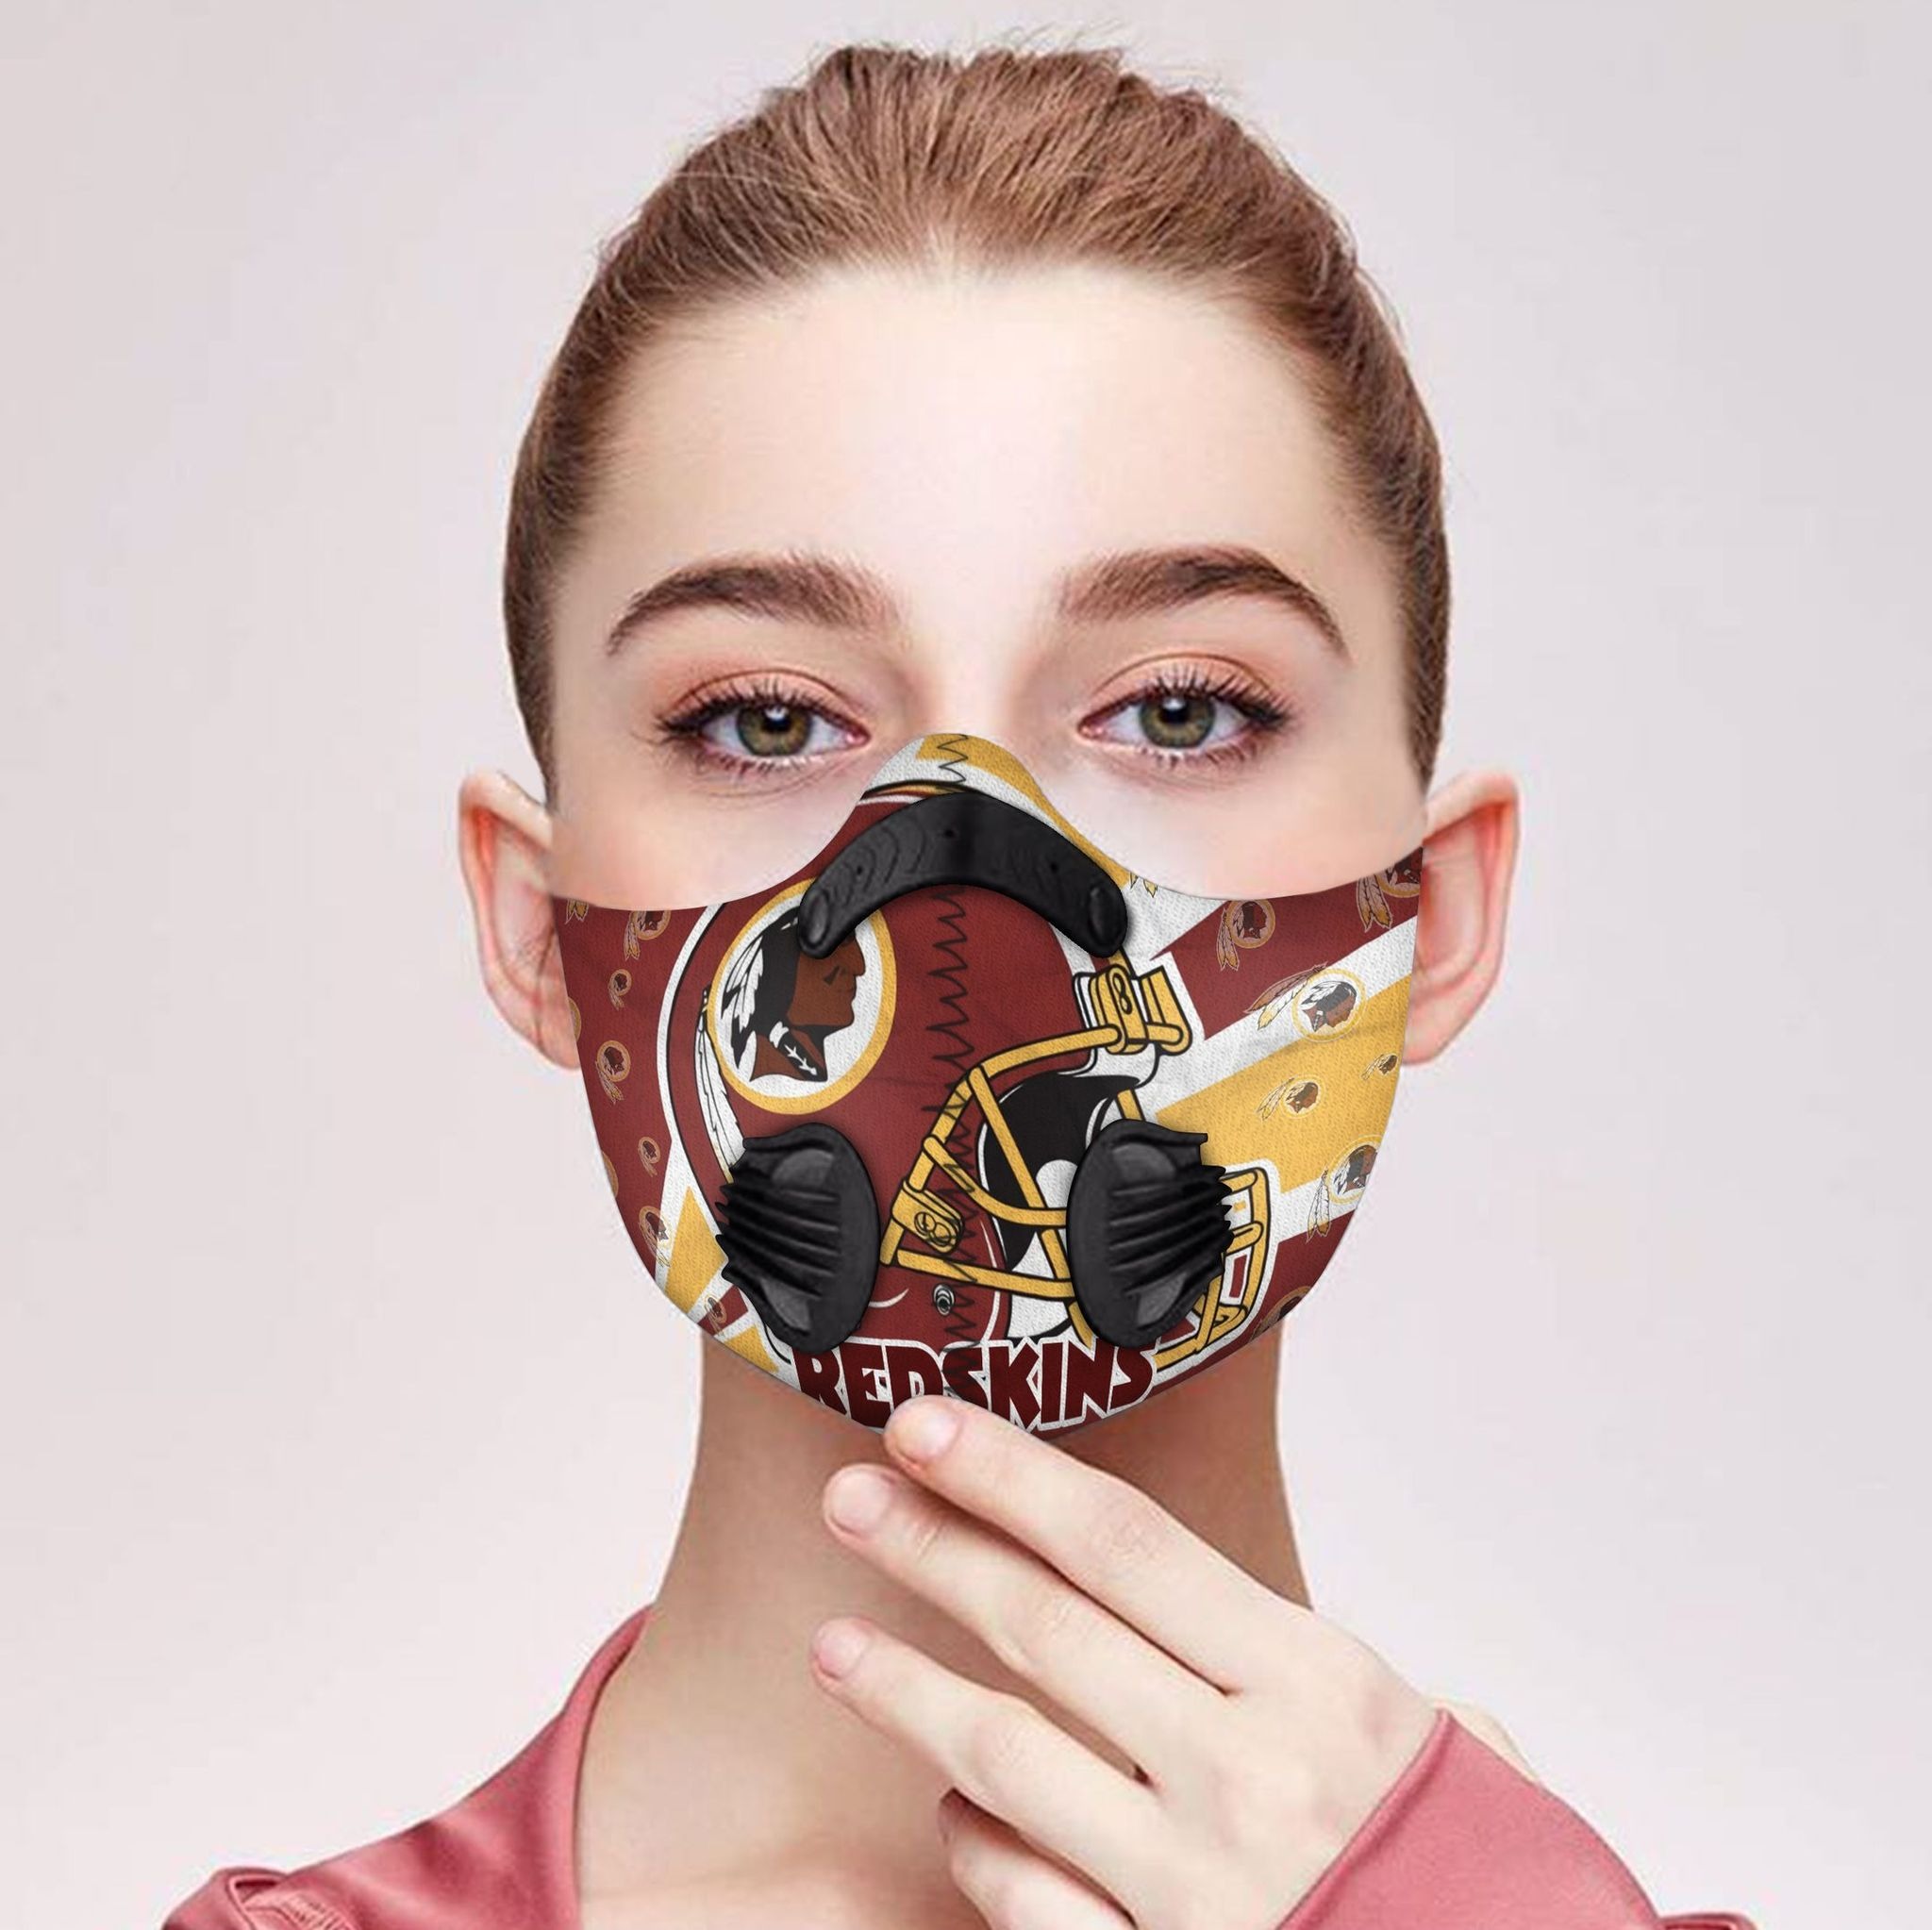 Redskins filter face mask - Pic 1